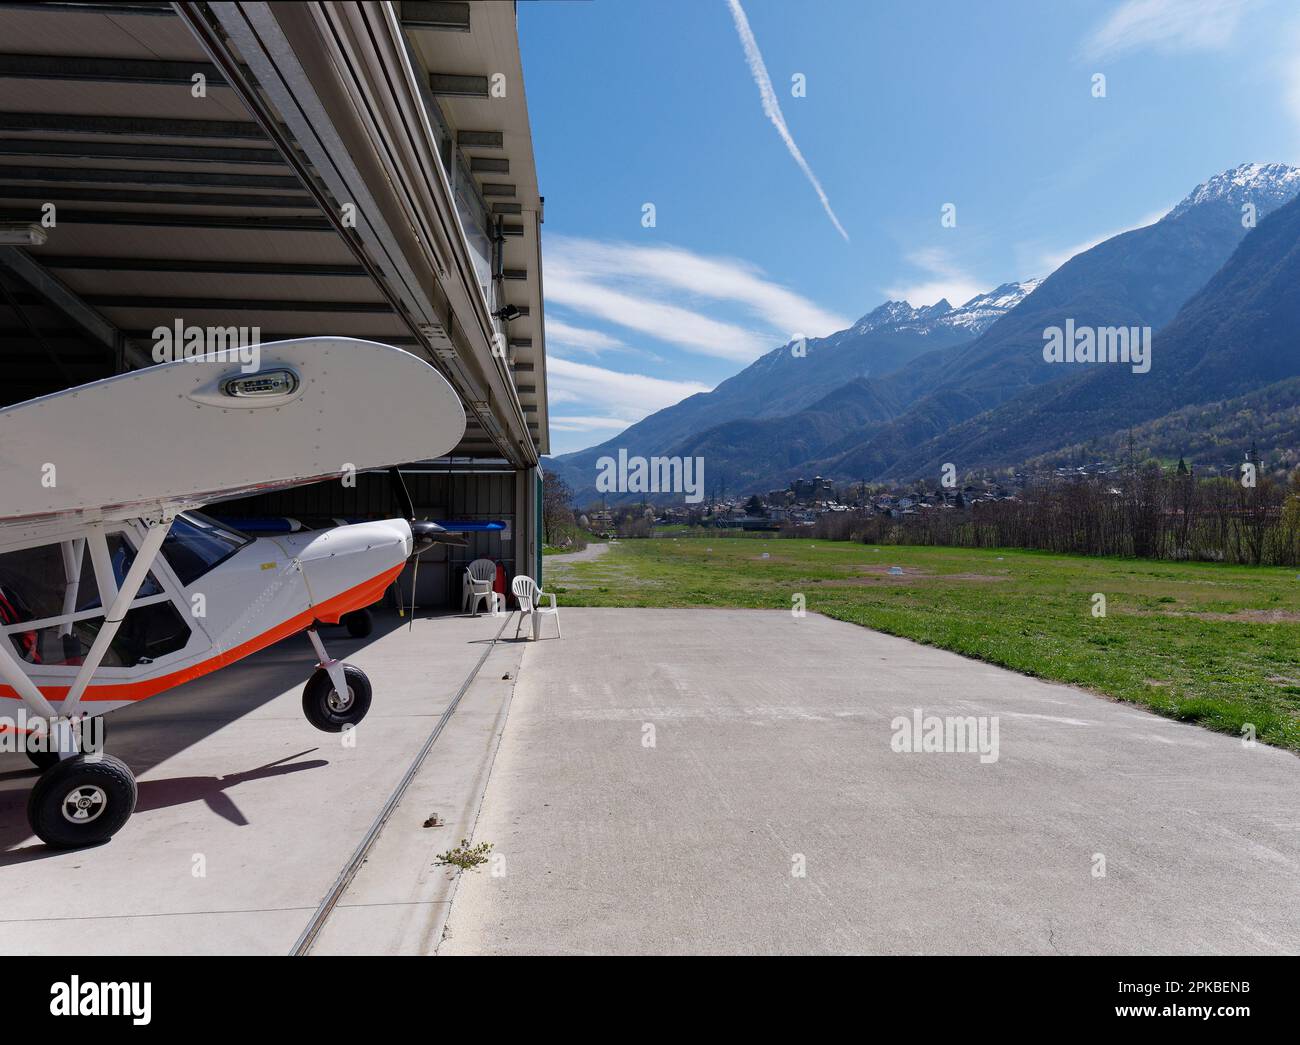 Leichtflugzeug in einem Hänger auf einem Flugplatz in Fenis, Aosta Valley, NW Italien Stockfoto